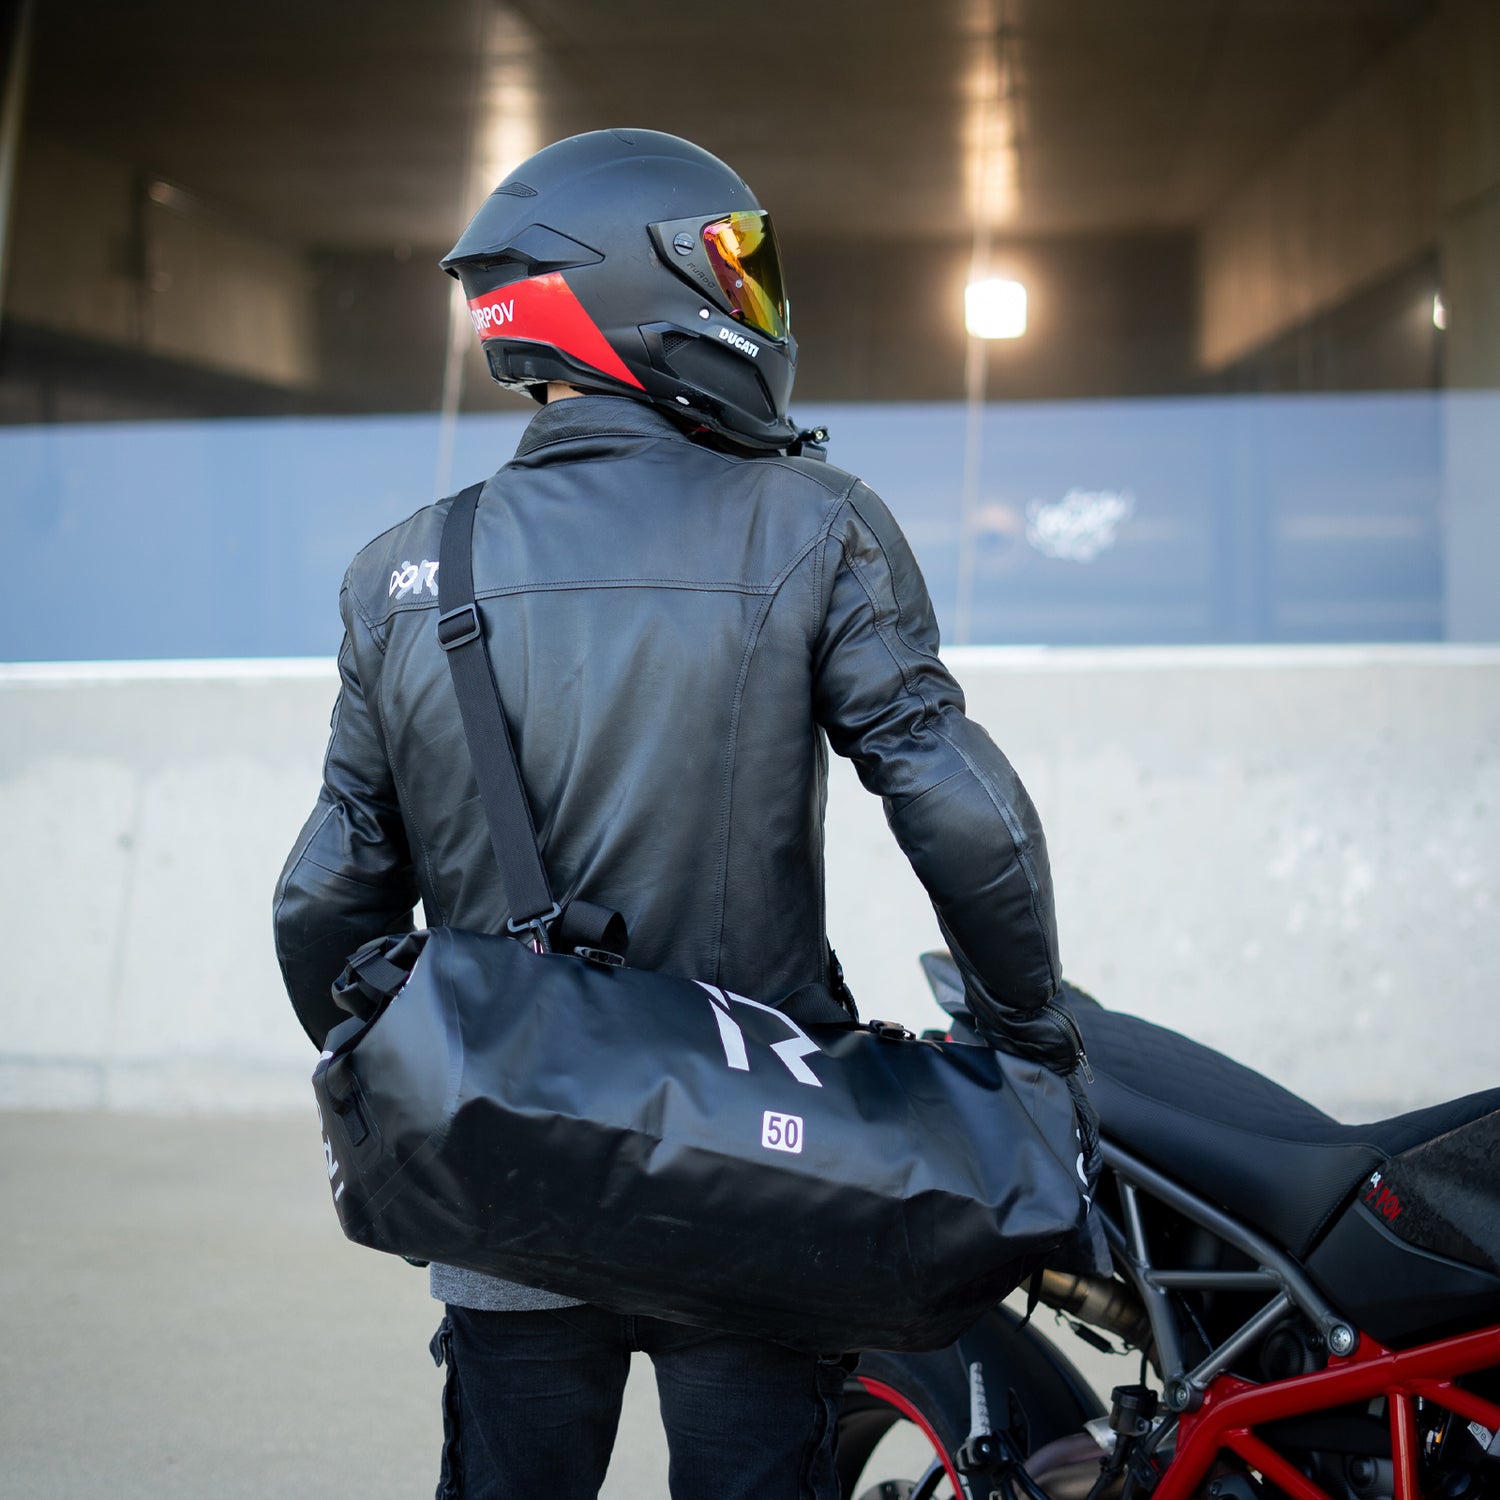 motorcycle urban riding bag